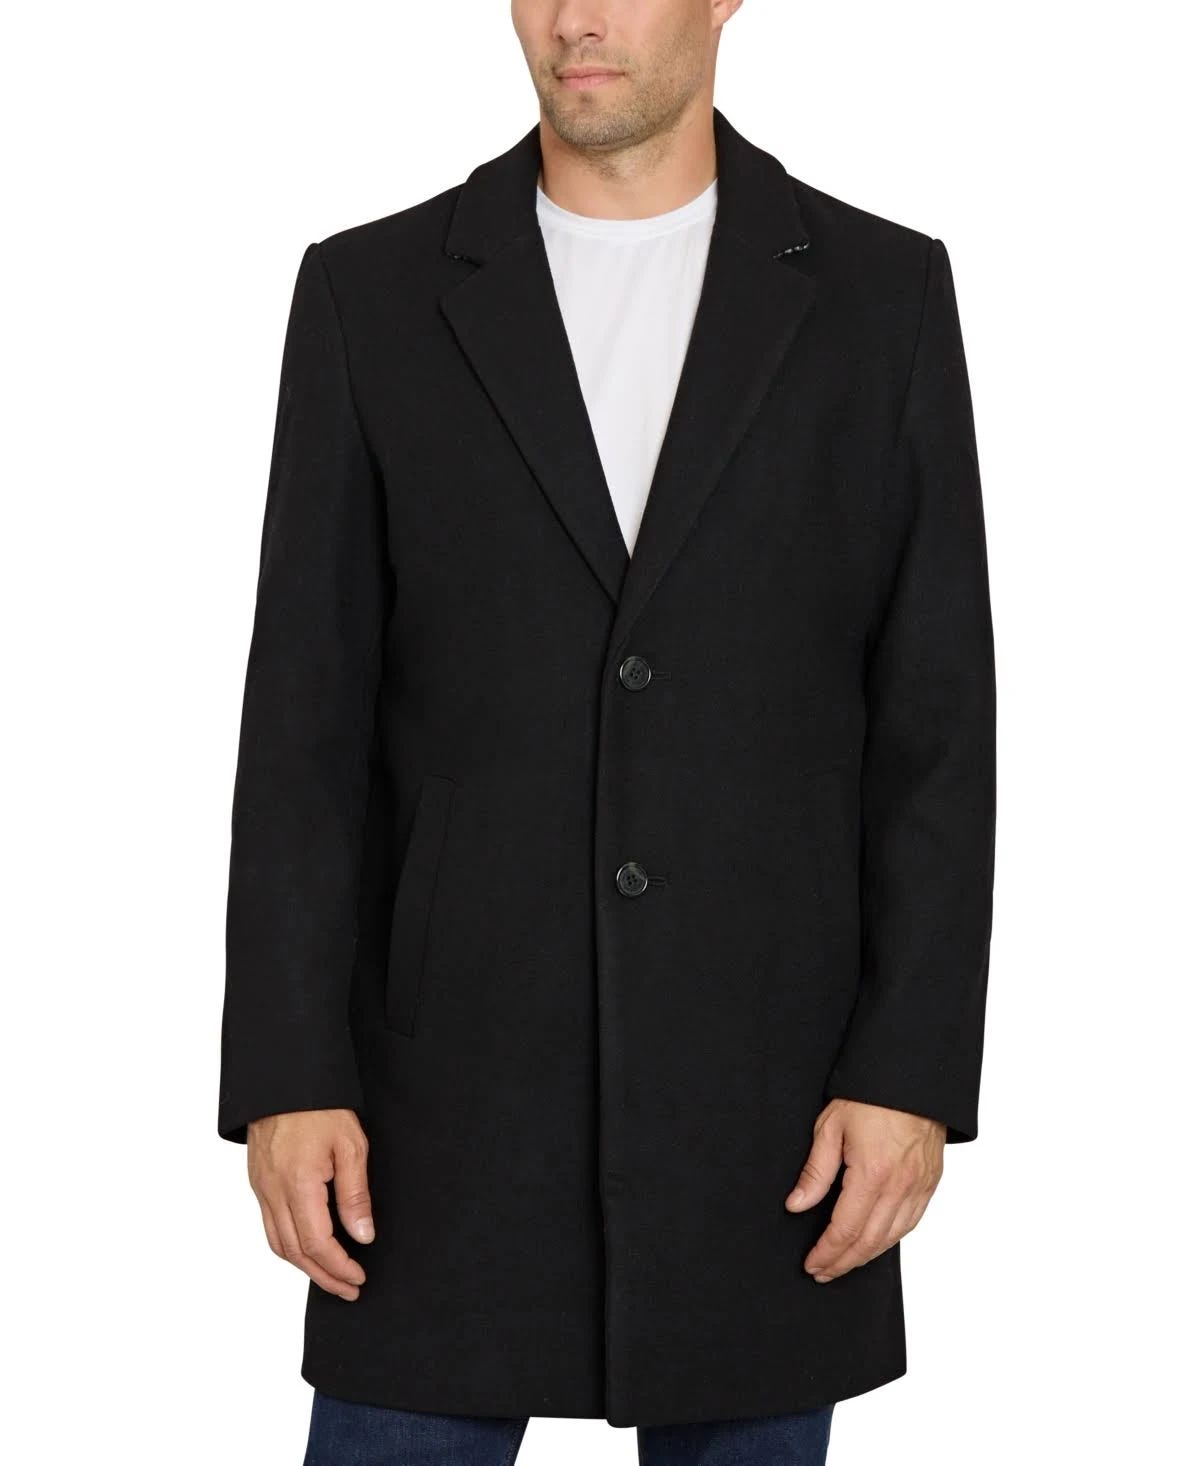 Modern Black Formal Coat for Men | Image